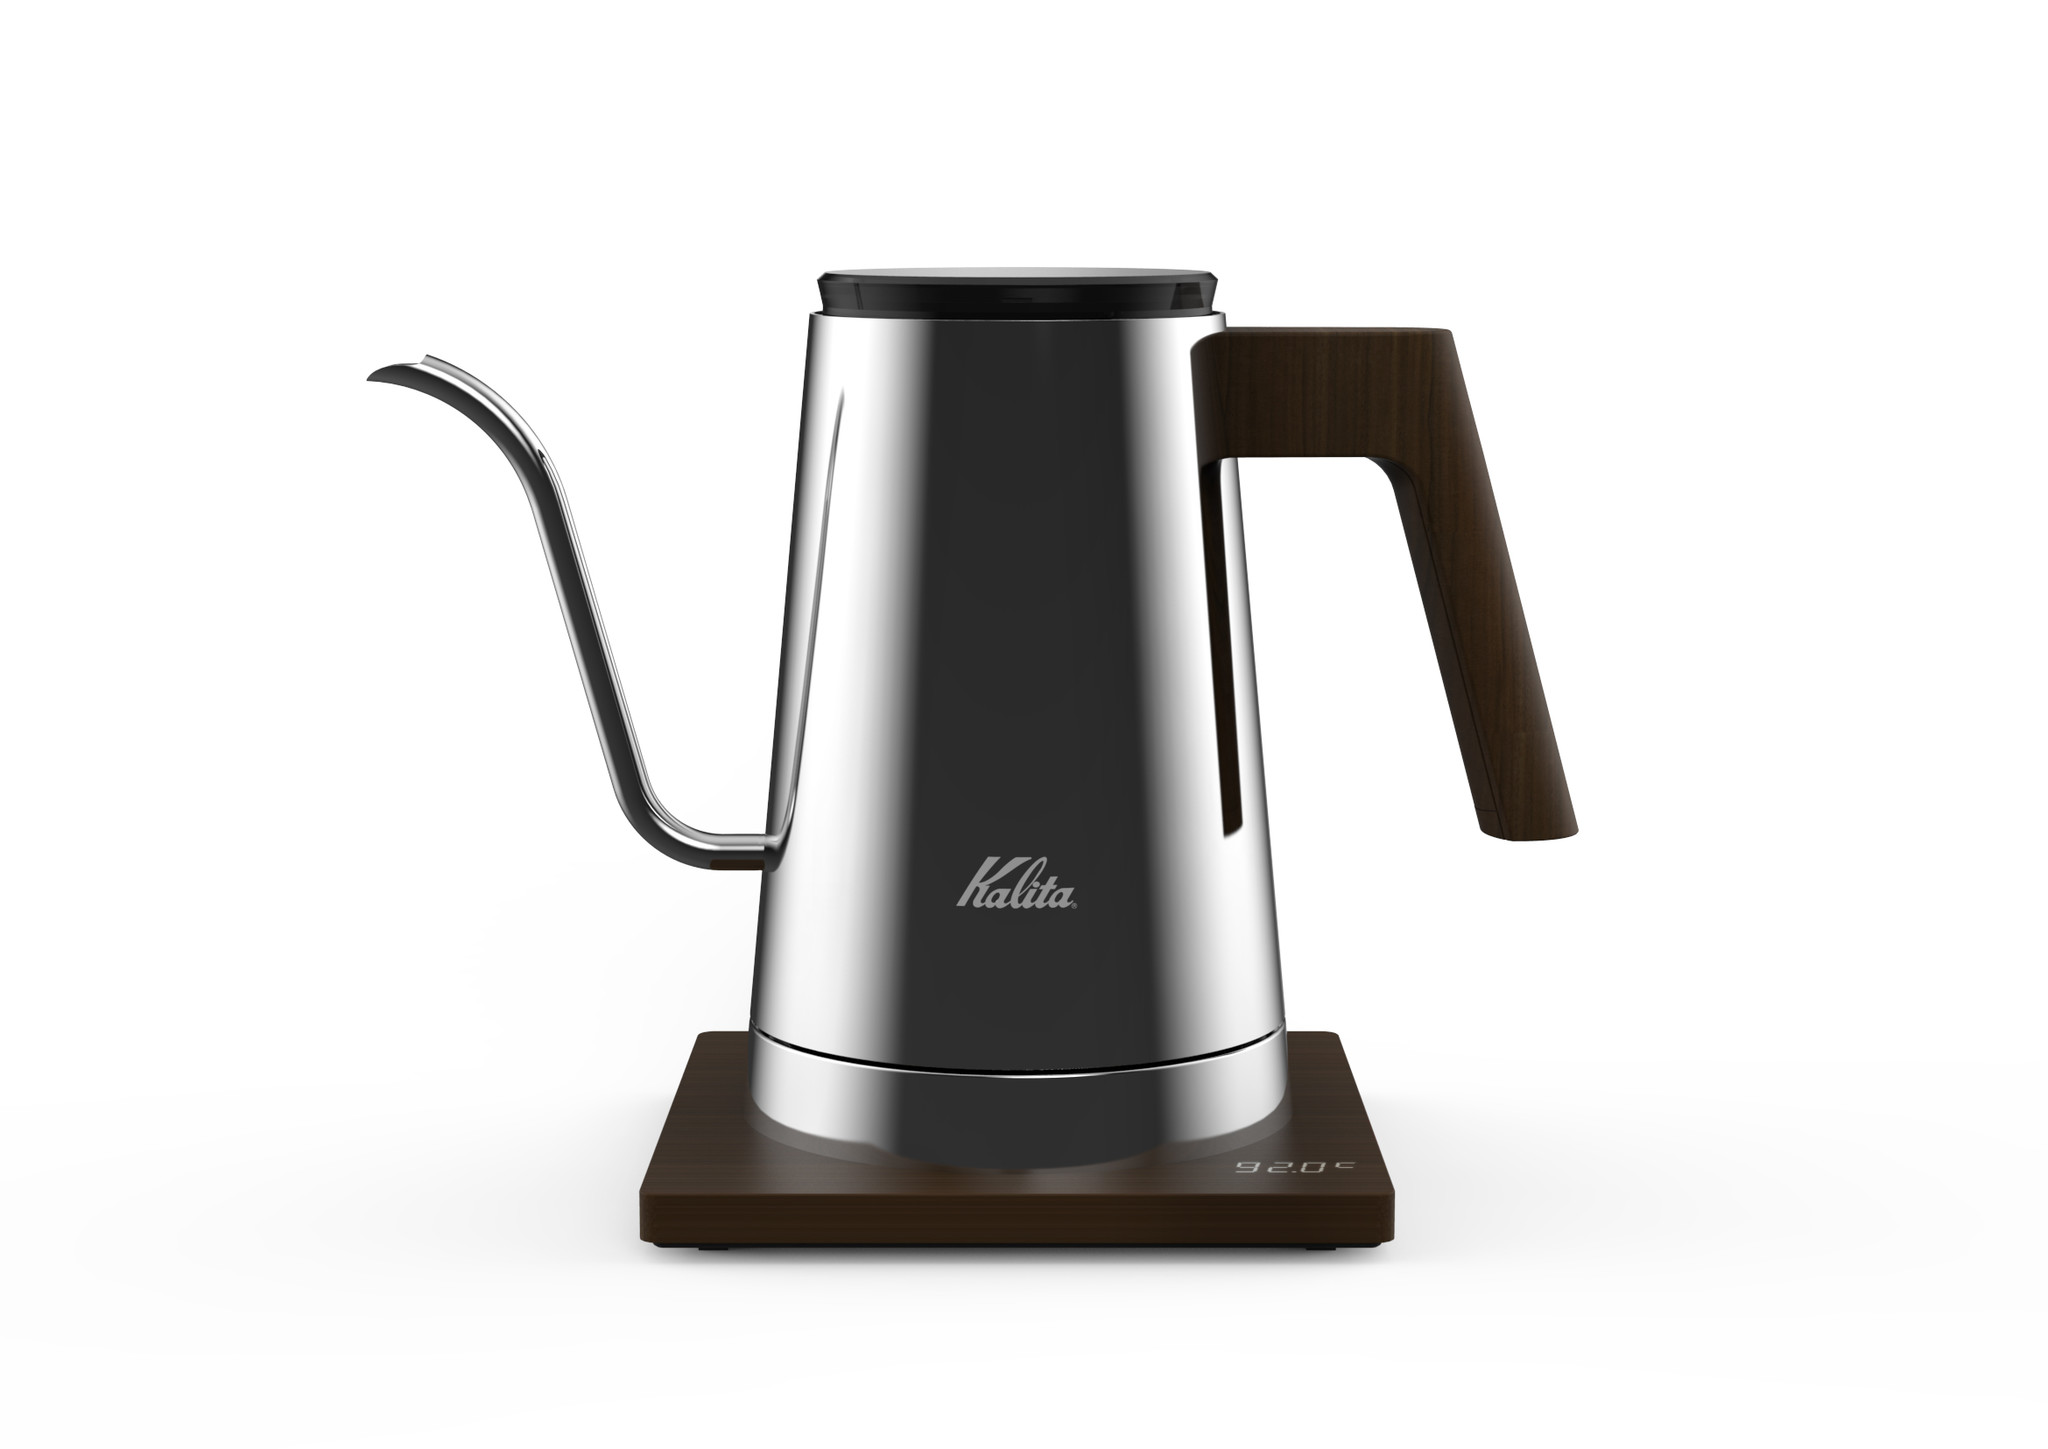 老舗コーヒー器具メーカー『Kalita』が新製品電気式ドリップ専用ポット